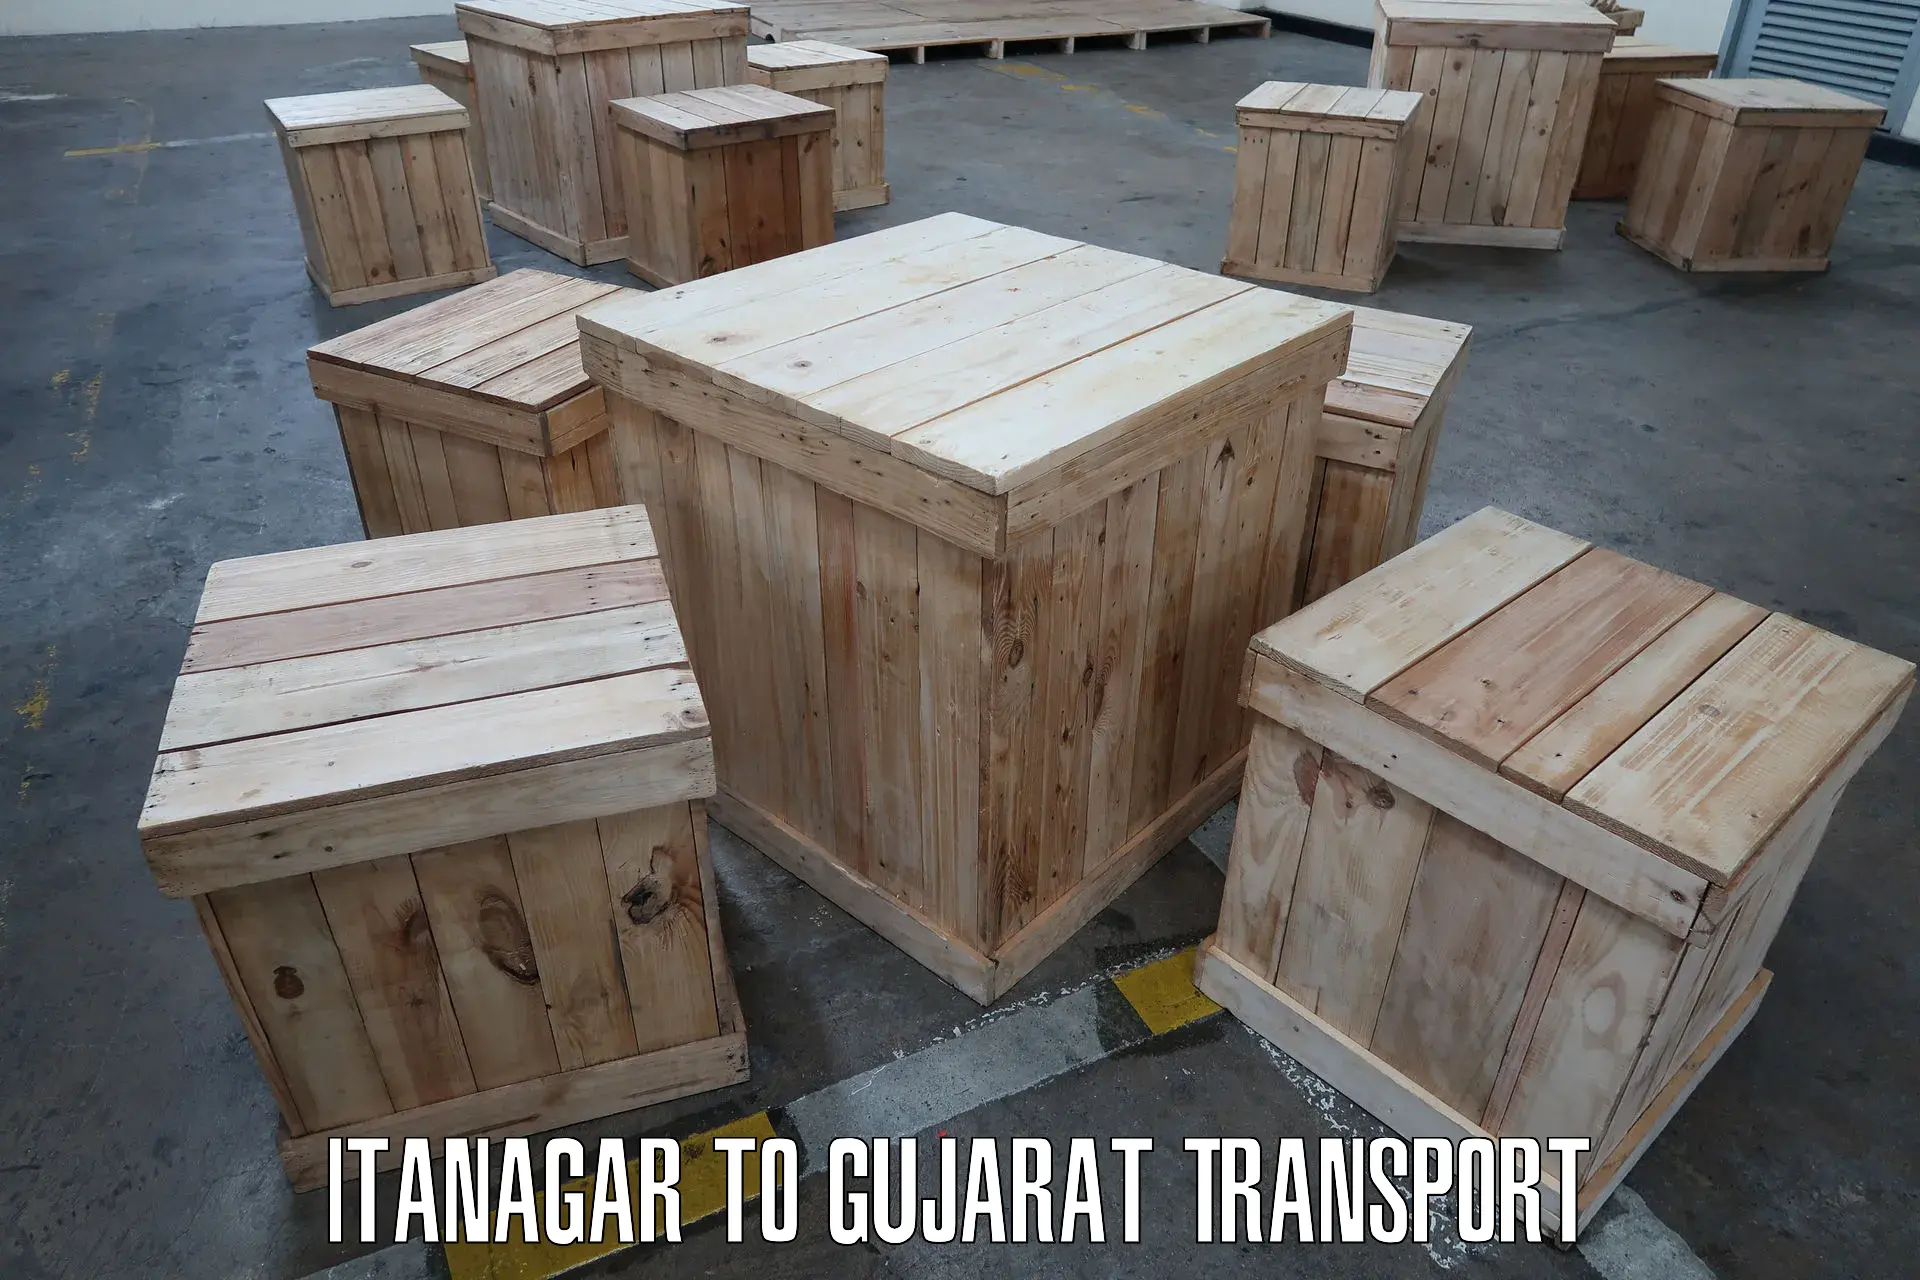 Bike shipping service Itanagar to Jhagadia